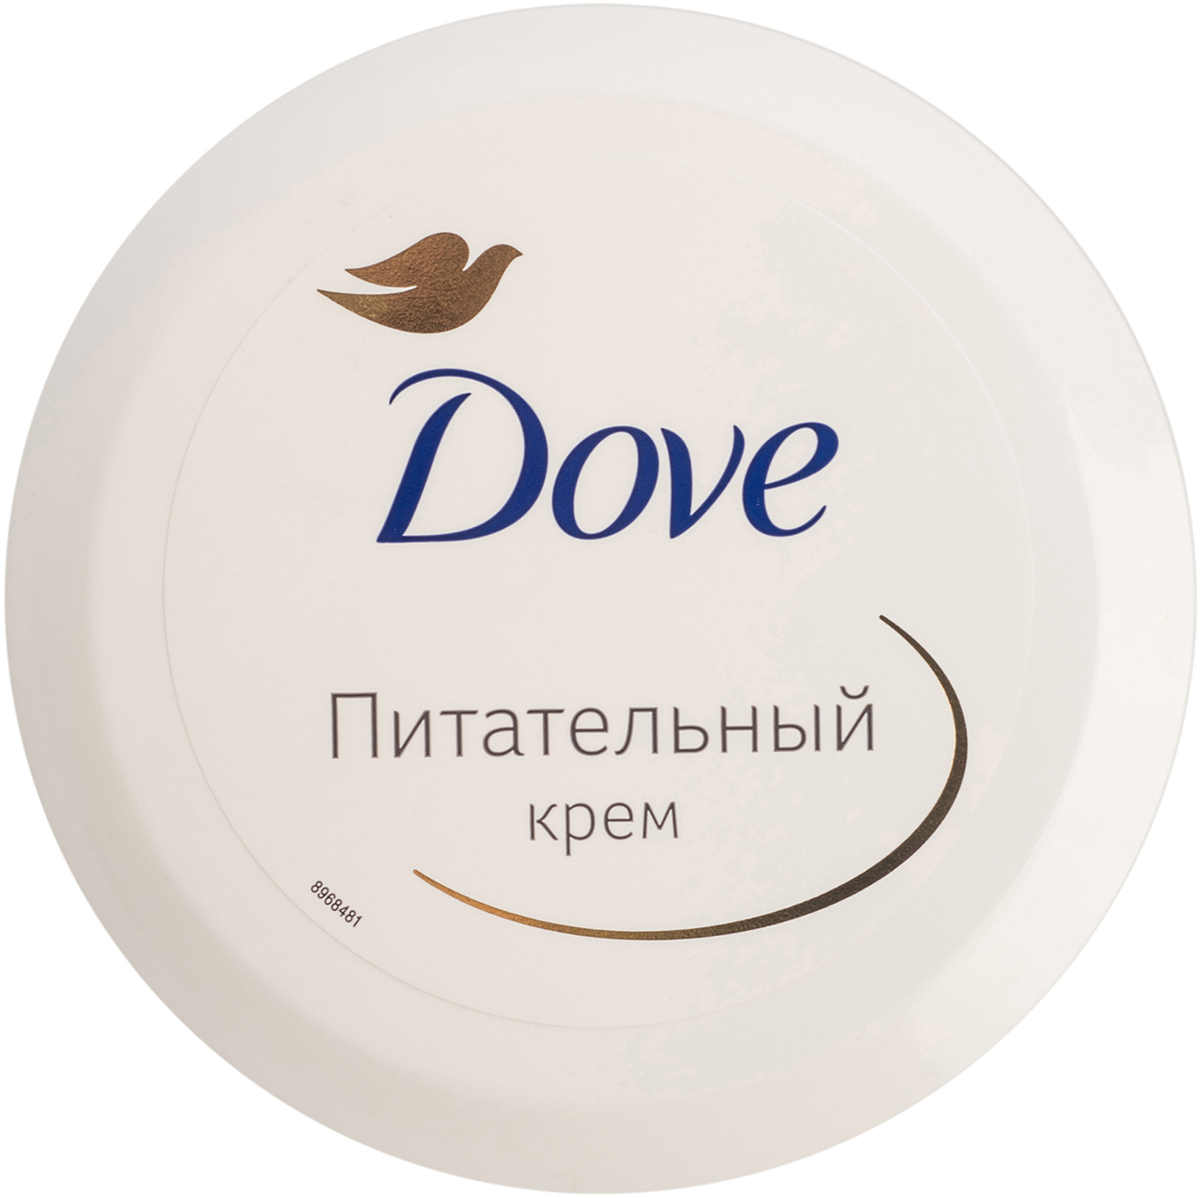 купить Dove Крем Питательный 150 мл - заказ и доставка в Москве и Санкт-Петербурге